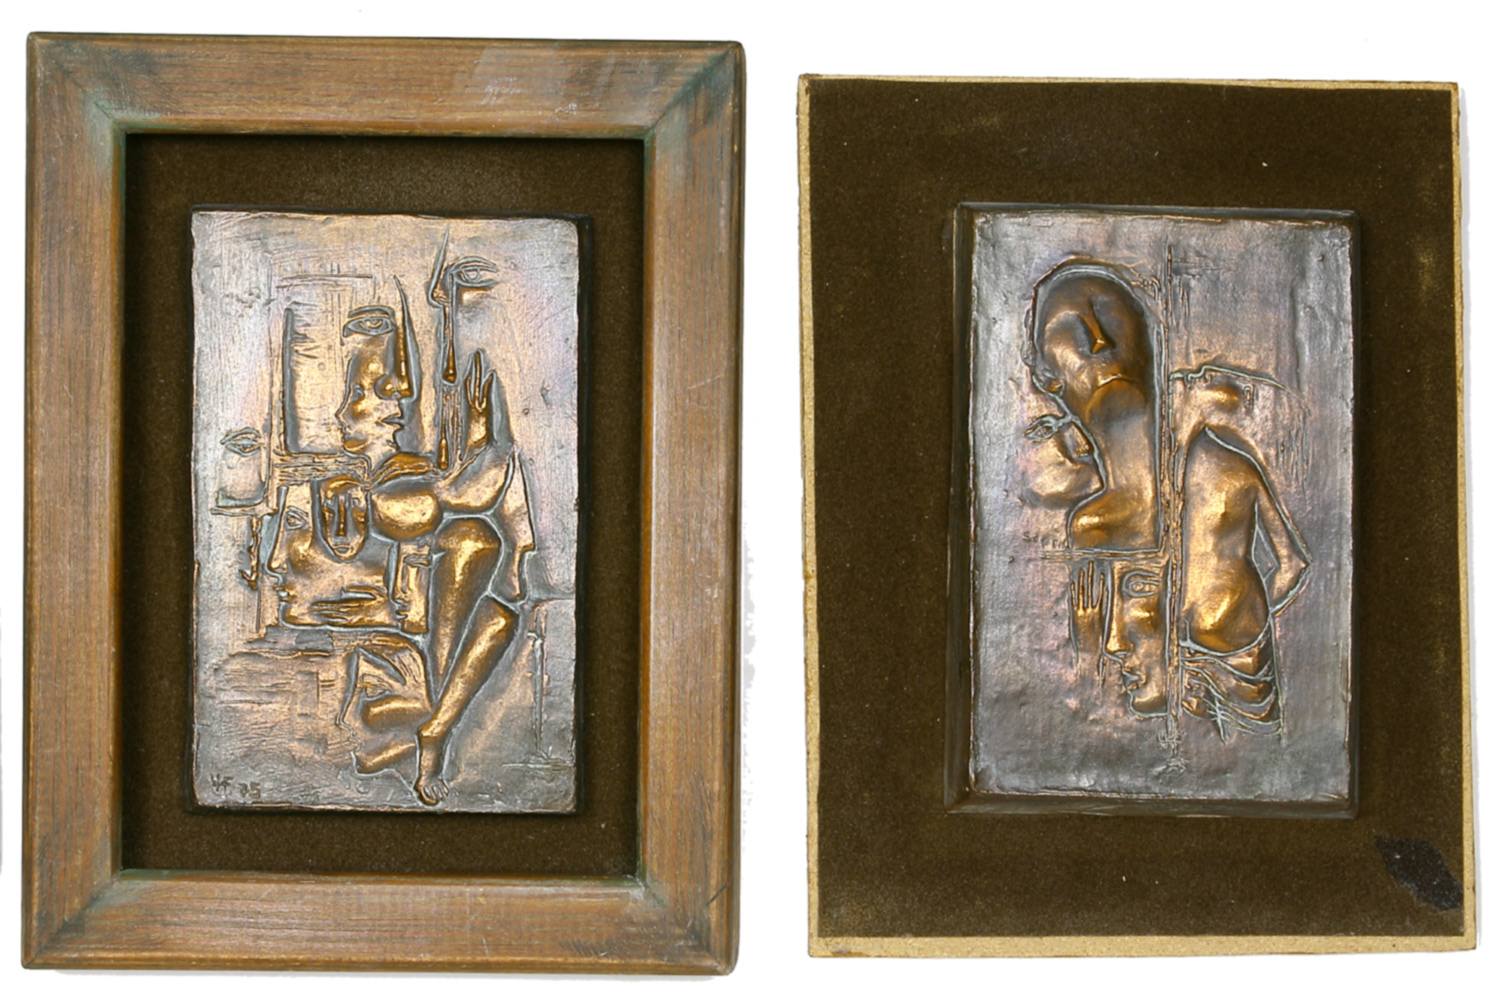 Auktionshaus Quentin Berlin  Dekorative Grafik Hanke-FÃ¶rster  Ursula  Eselreiter. 3 Reliefs